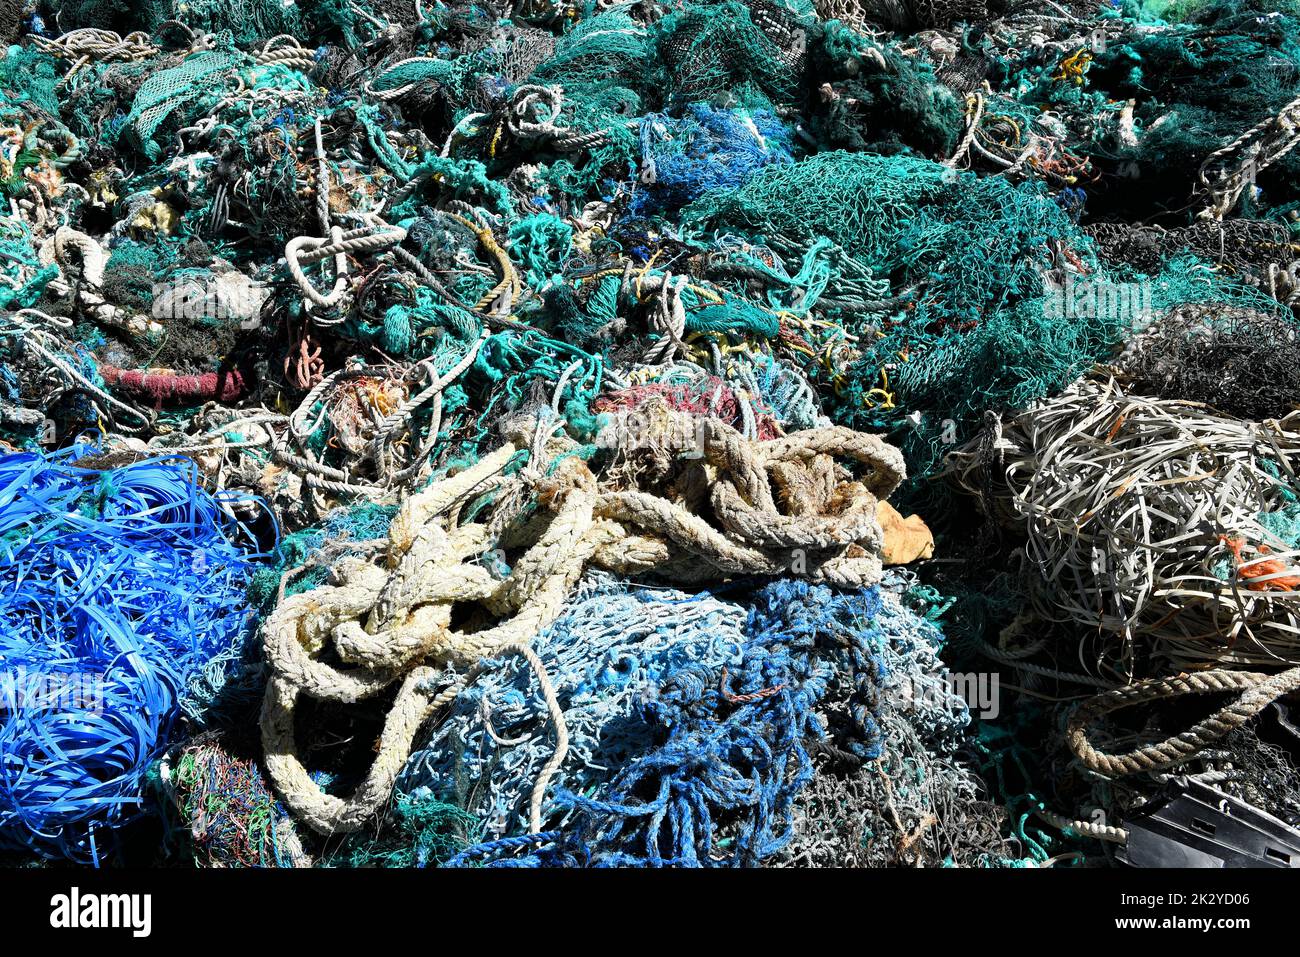 Un grande mucchio di reti da pesca con reti da traino, corde e detriti dragati dal porto di Los Angeles. Le reti da pesca sono una delle principali fonti di inquinamento degli oceani. Foto Stock